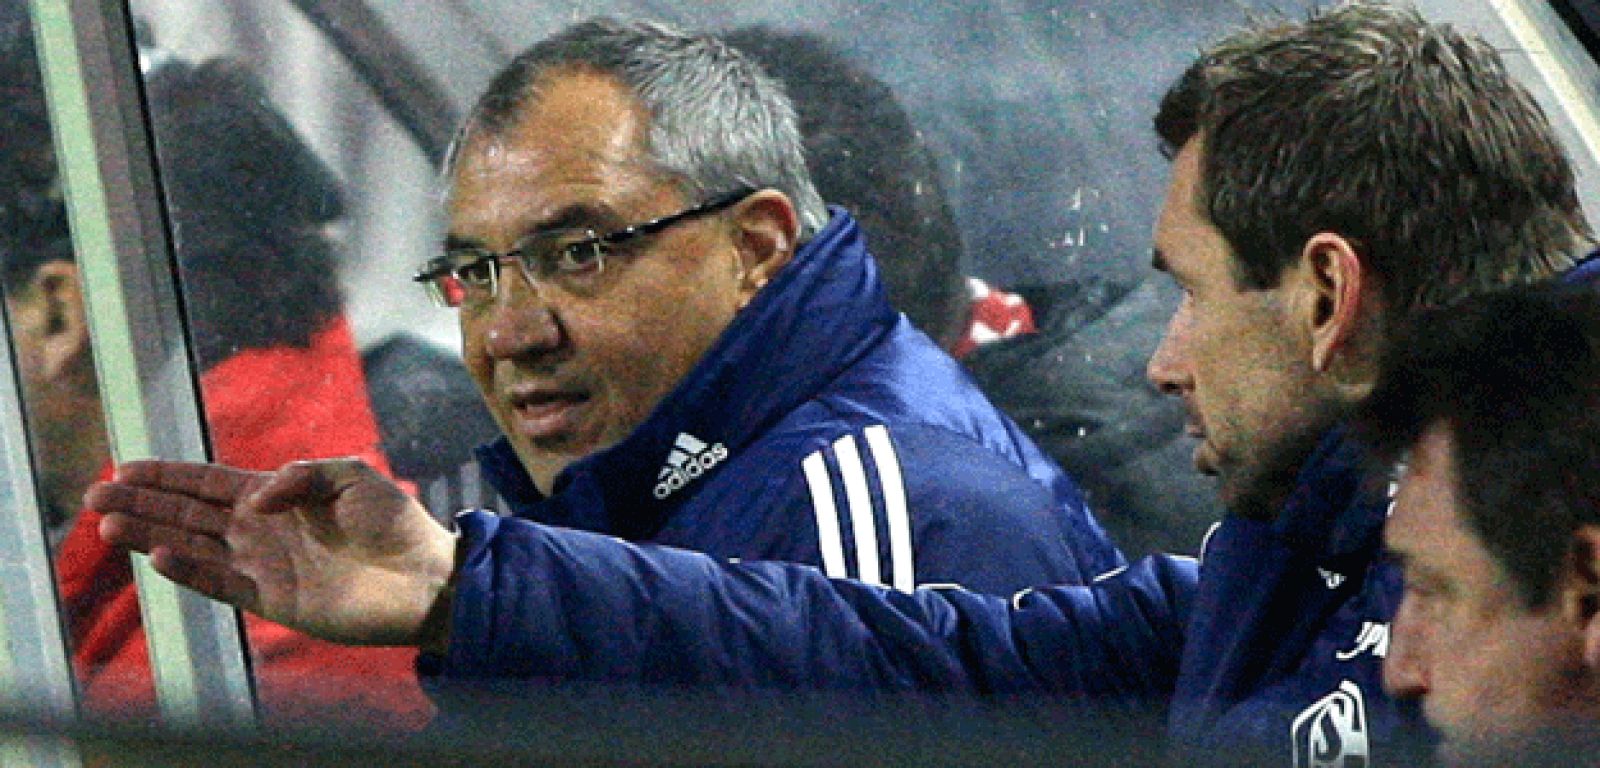 El entrenador del Schalke 04, Felix Magath, será "duro" ante los malos resultados de su equipo